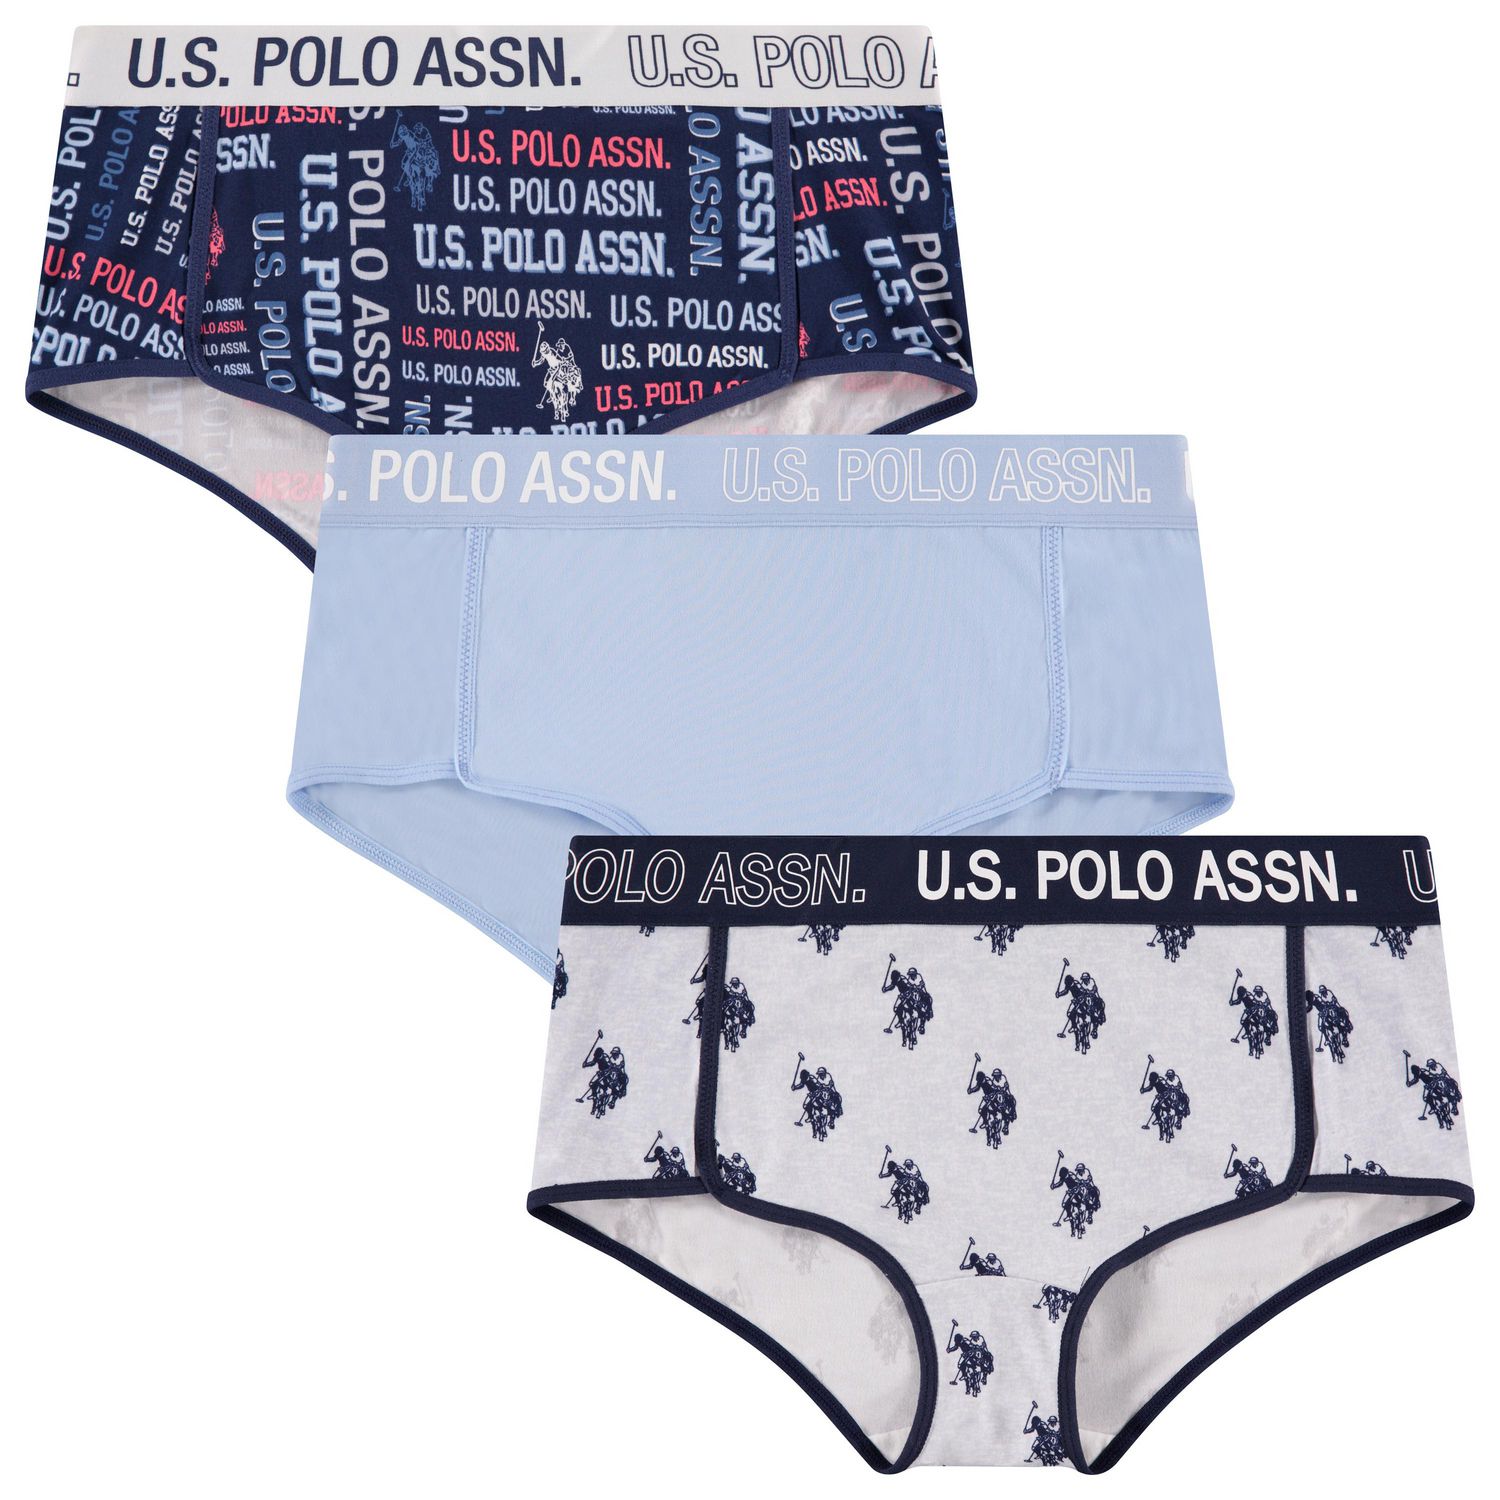 U.S. Polo Assn. Panties